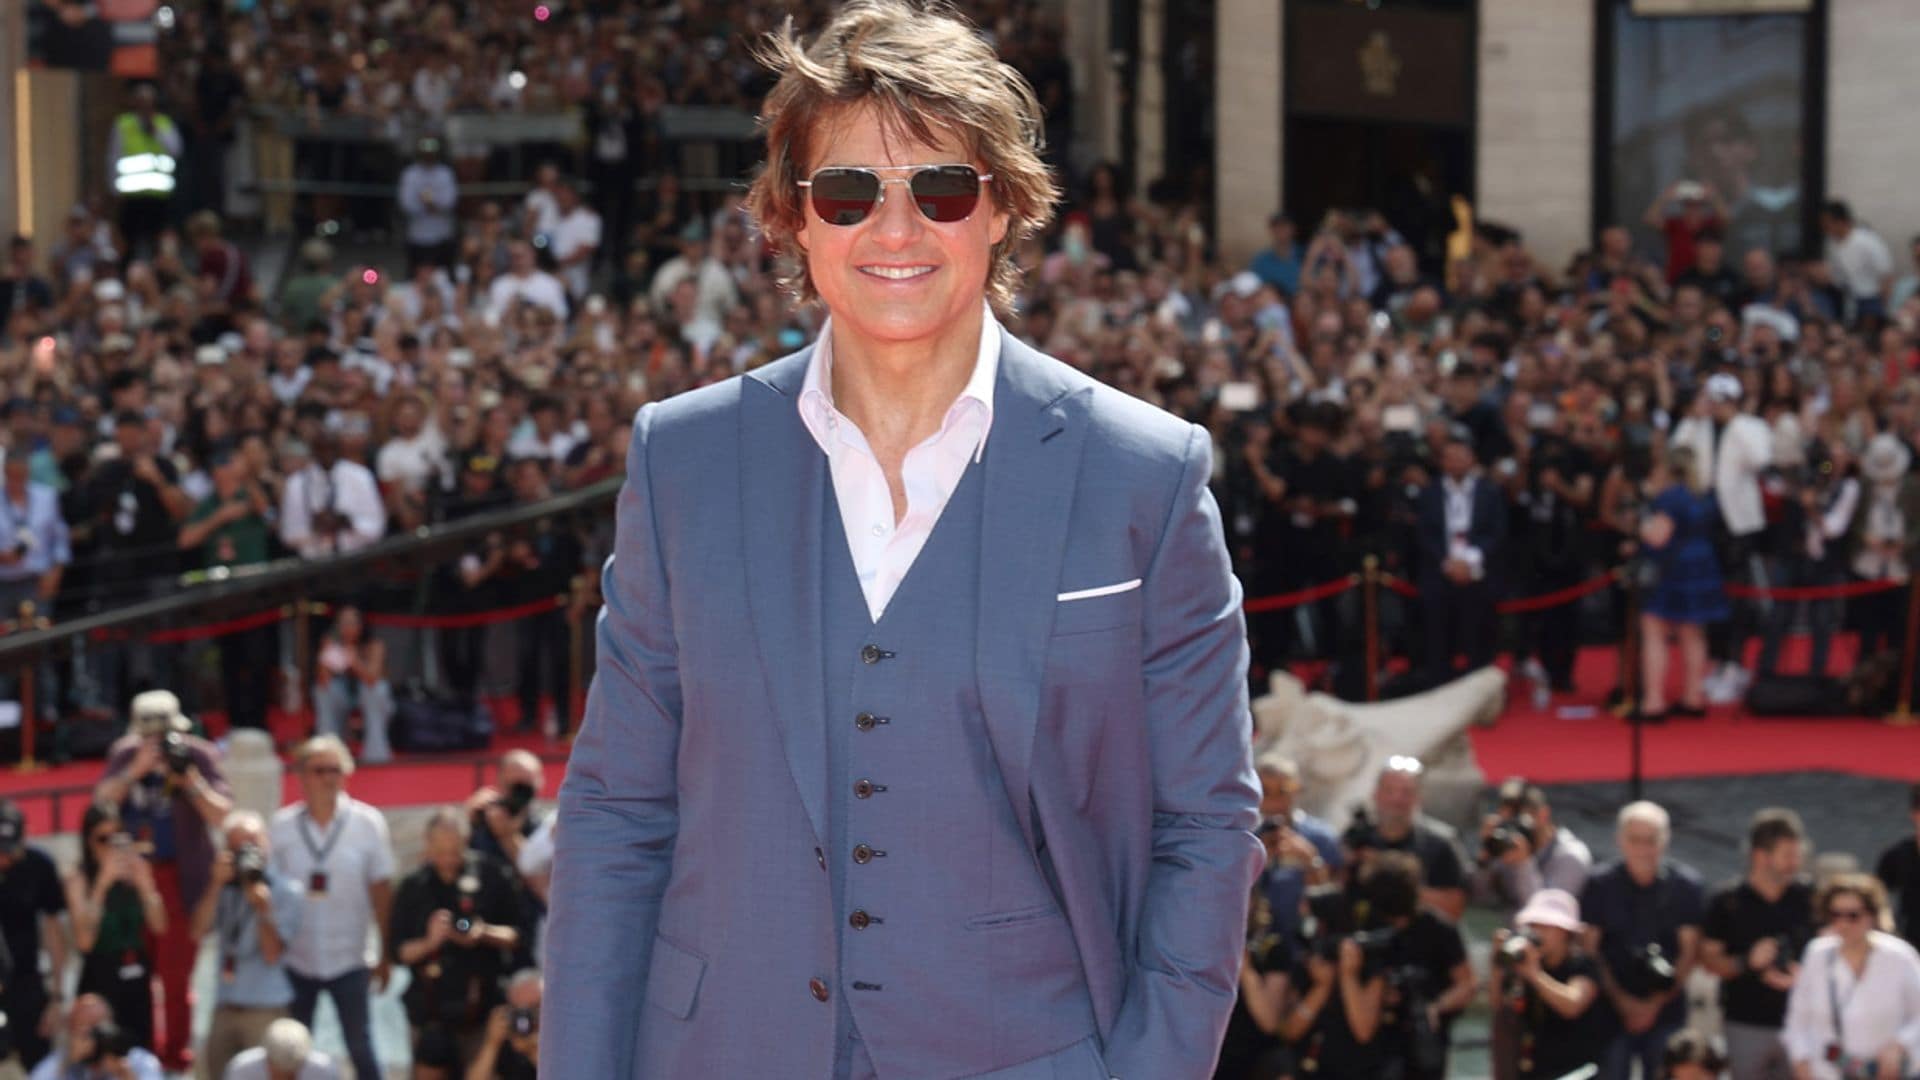 El emocionante discurso de Tom Cruise en la premiere mundial de 'Misión Imposible 7' en Roma